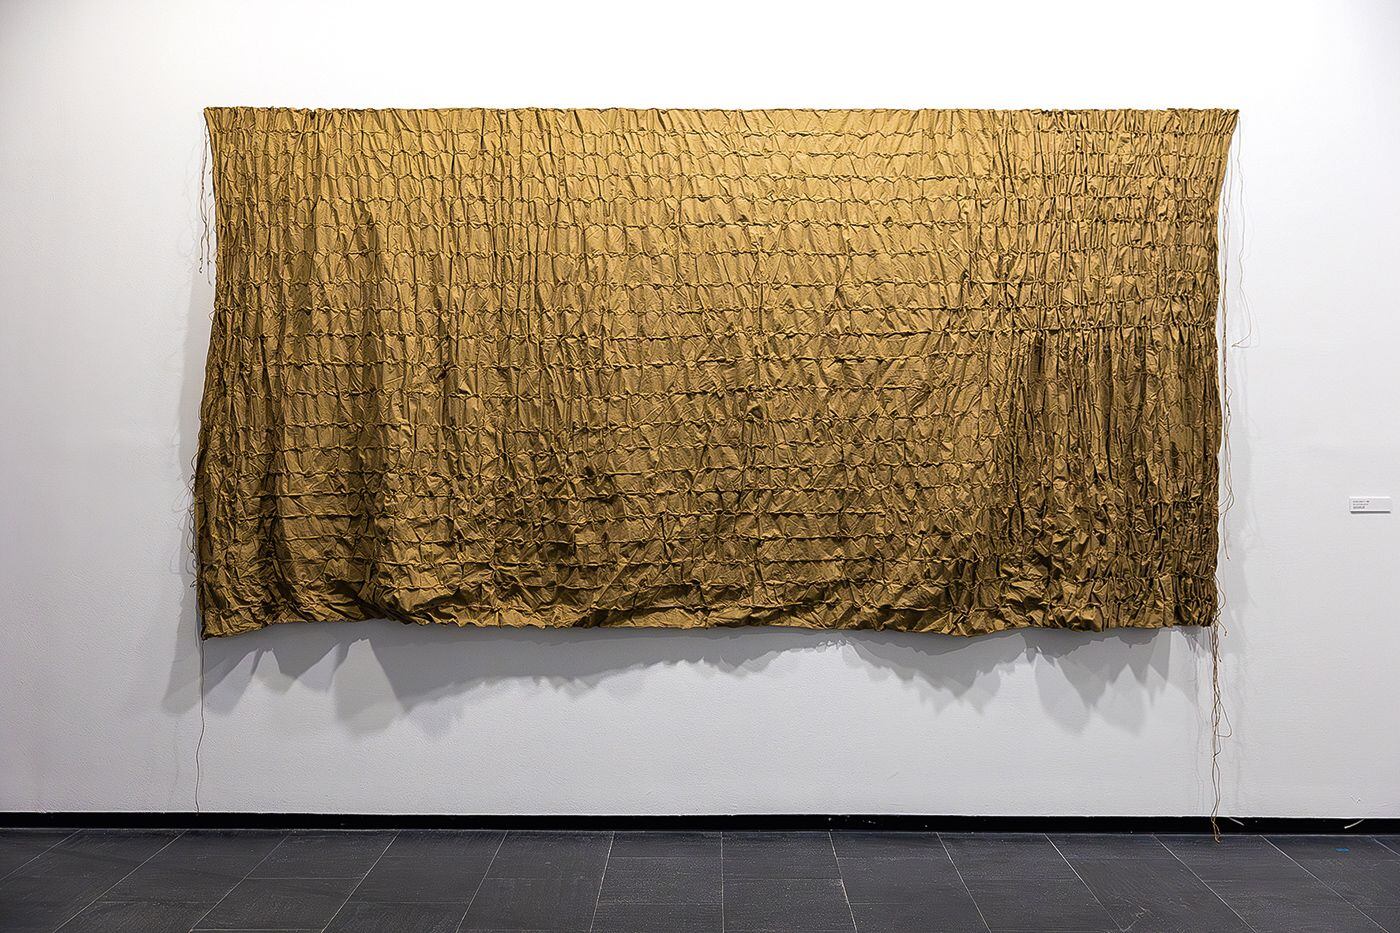 ‘Un’ altra notte nº1′, 1980, realizada en tela y cordel. Es una de las piezas tempranas de Susana Solano adquiridas ahora por el Centro de Arte Dos de Mayo de Móstoles.